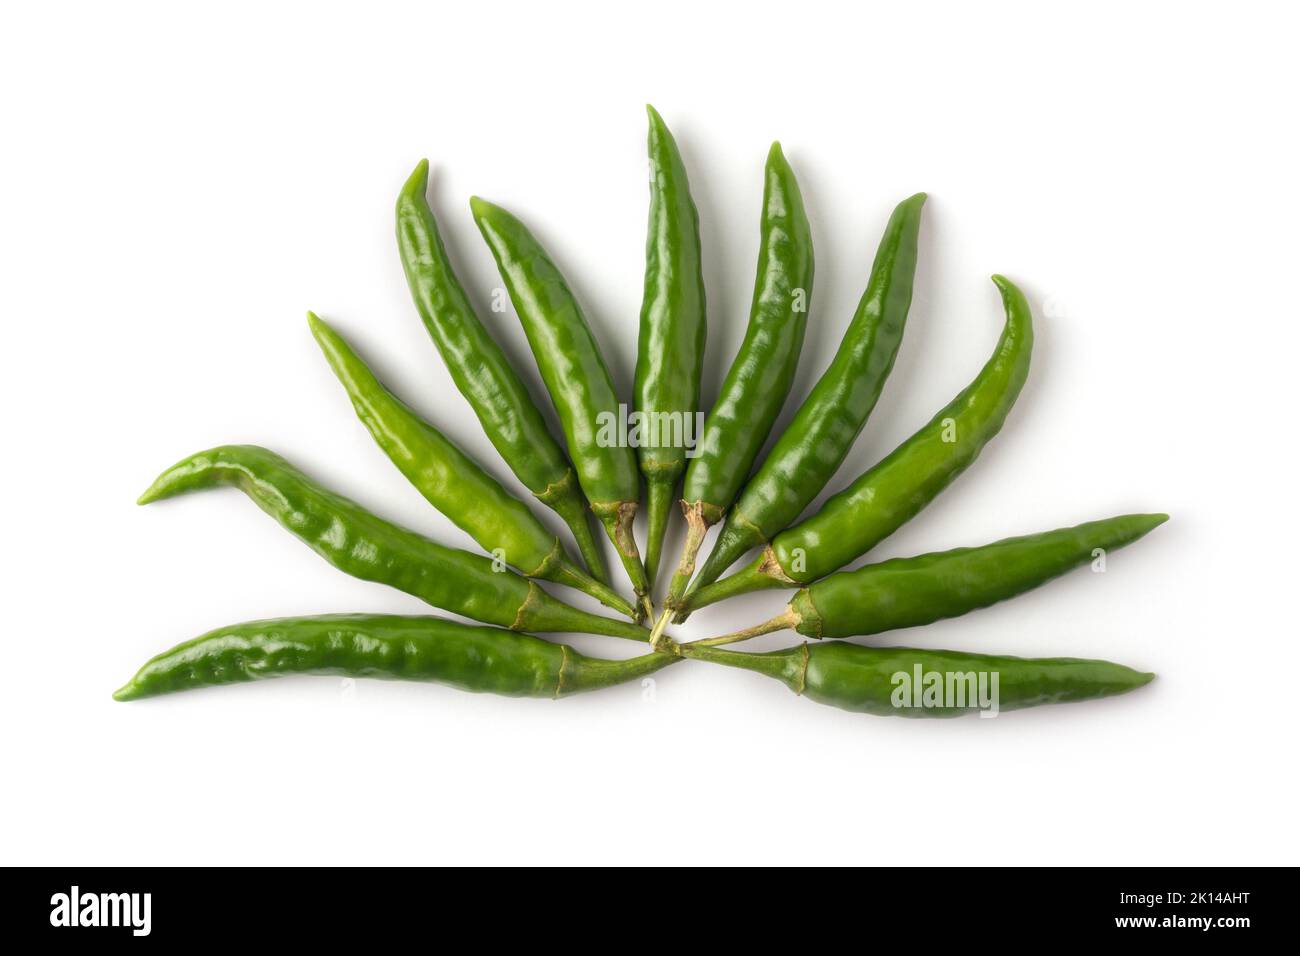 Grüne Chilis auf weißem Hintergrund angeordnet, gemeinsame Gemüse für ihren würzigen Geschmack verwendet Stockfoto